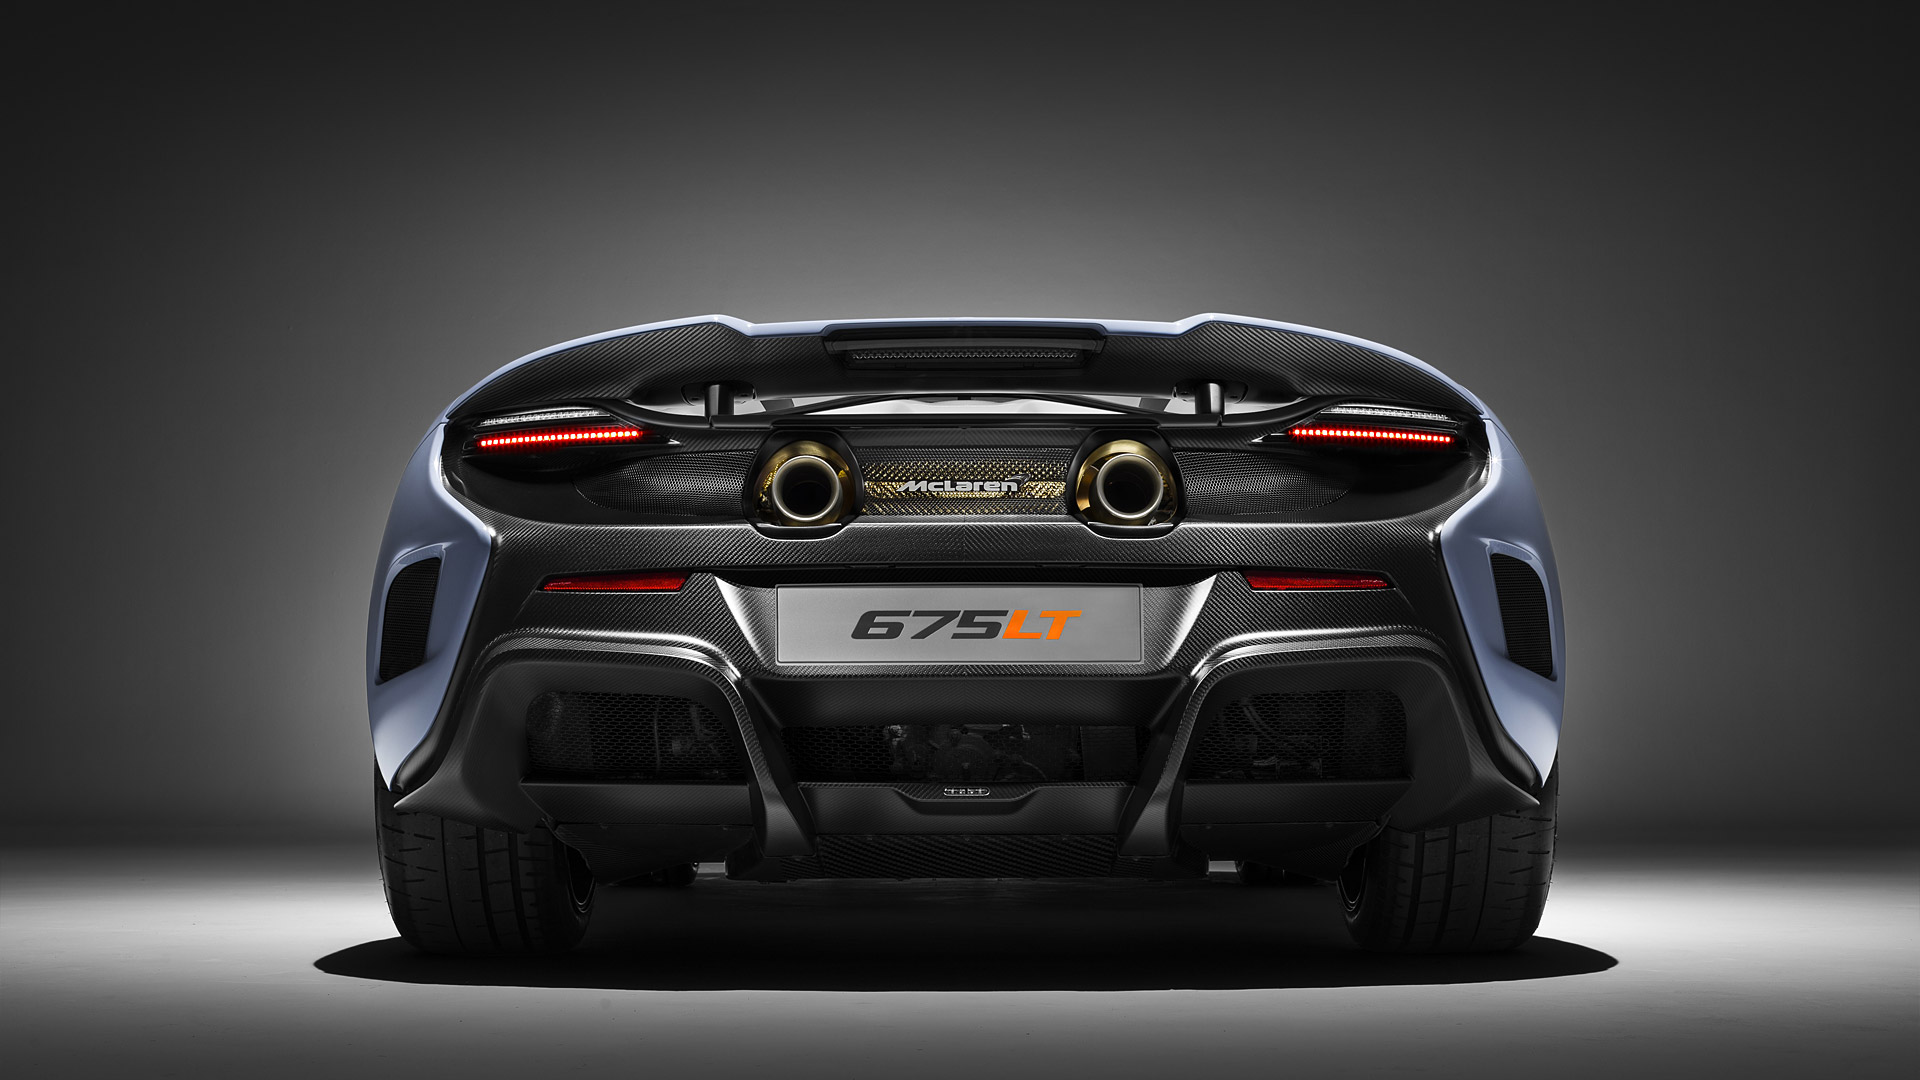  2016 McLaren 675LT MSO Wallpaper.